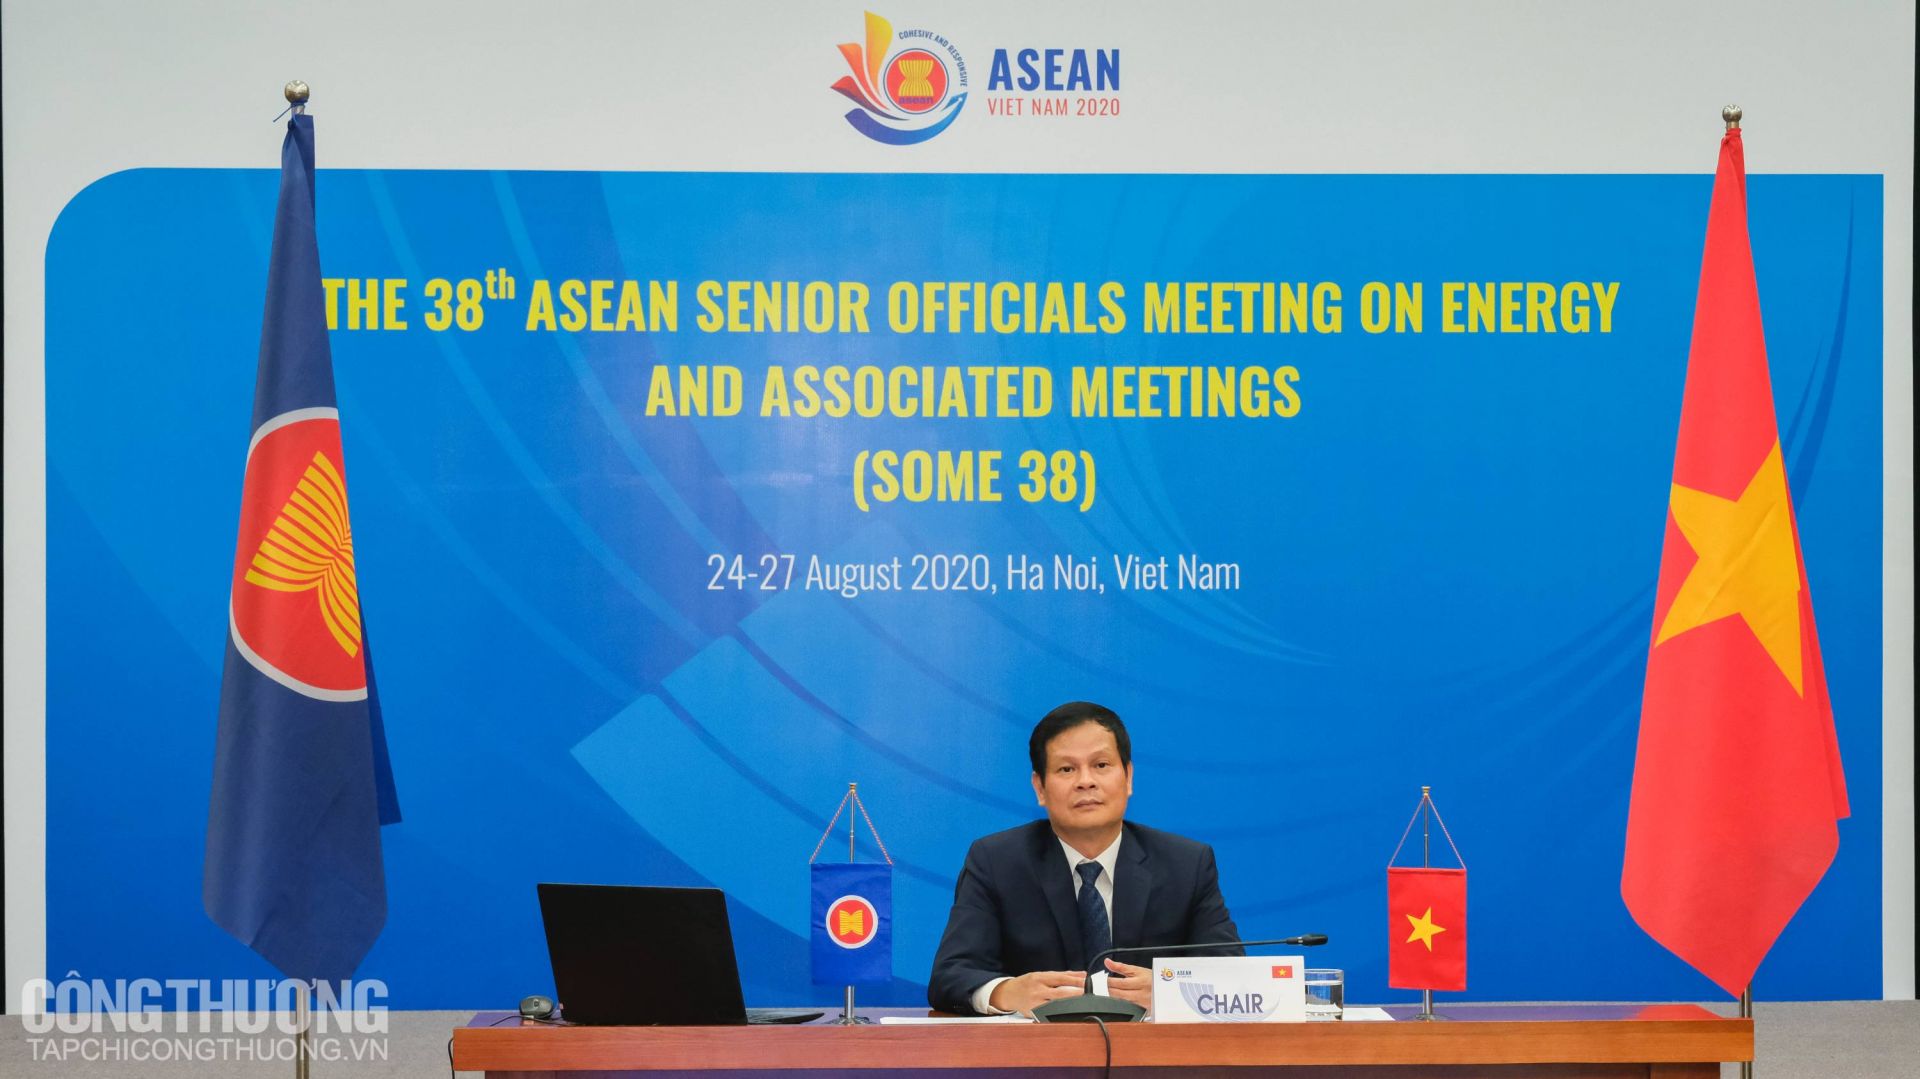 Ông Hoàng Tiến Dũng - Cục trưởng Cục Điện lực và Năng lượng tái tạo (Bộ Công Thương), Trưởng đoàn quan chức cấp cao năng lượng Việt Nam tại ASEAN chủ trì SOME 38